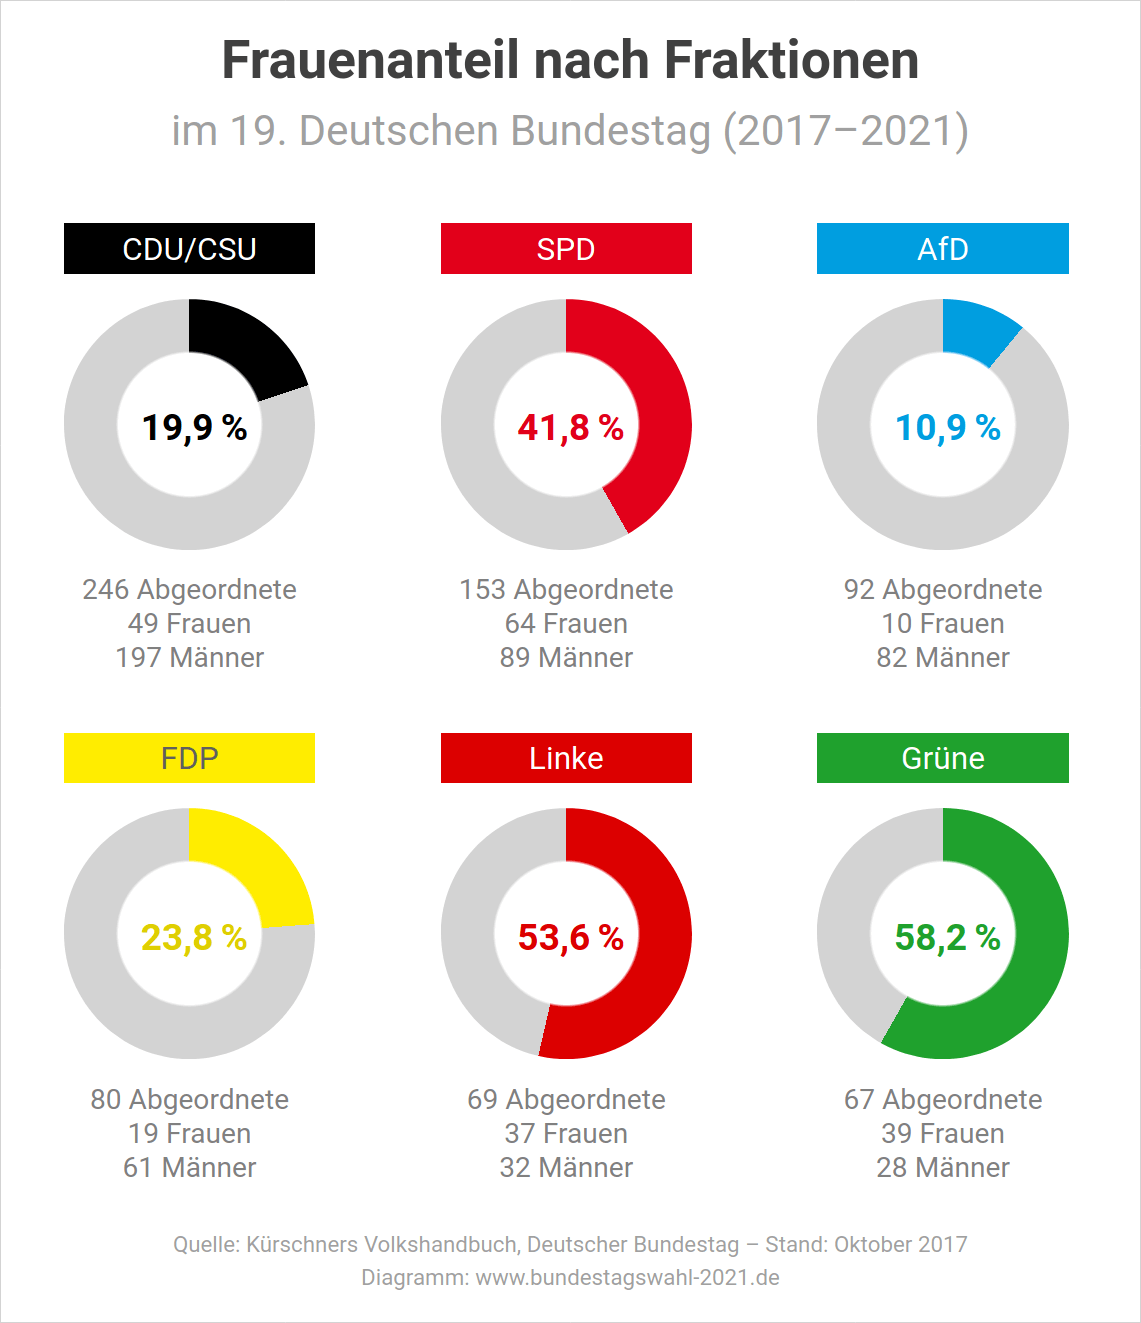 Frauenanteil nach Fraktionen im Bundestag in der Legislaturperiode 2017-2021